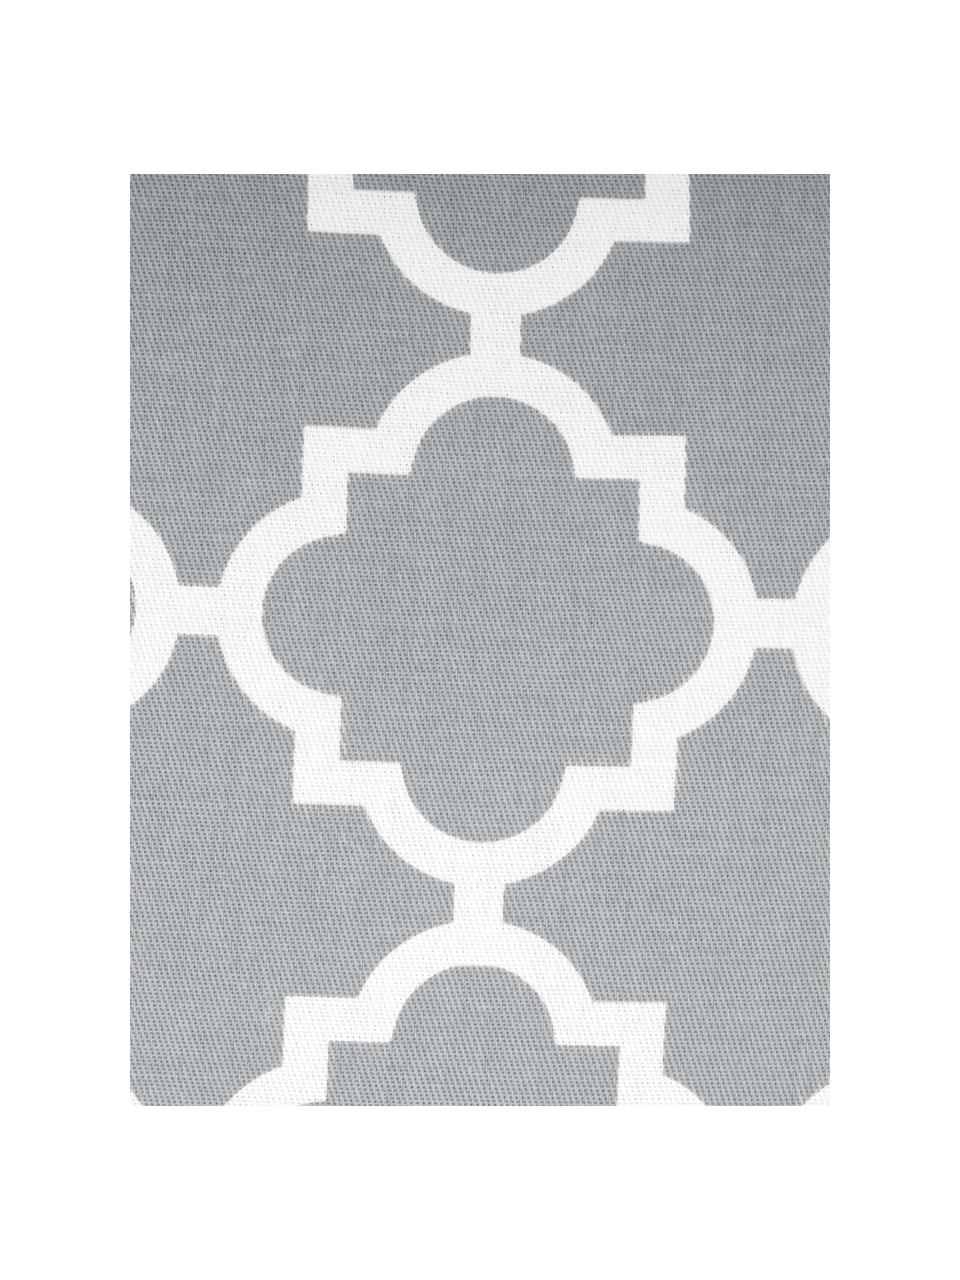 Federa arredo in cotone grigio con motivo grafico Lana, 100% cotone, Grigio chiaro, bianco, Larg. 30 x Lung. 50 cm